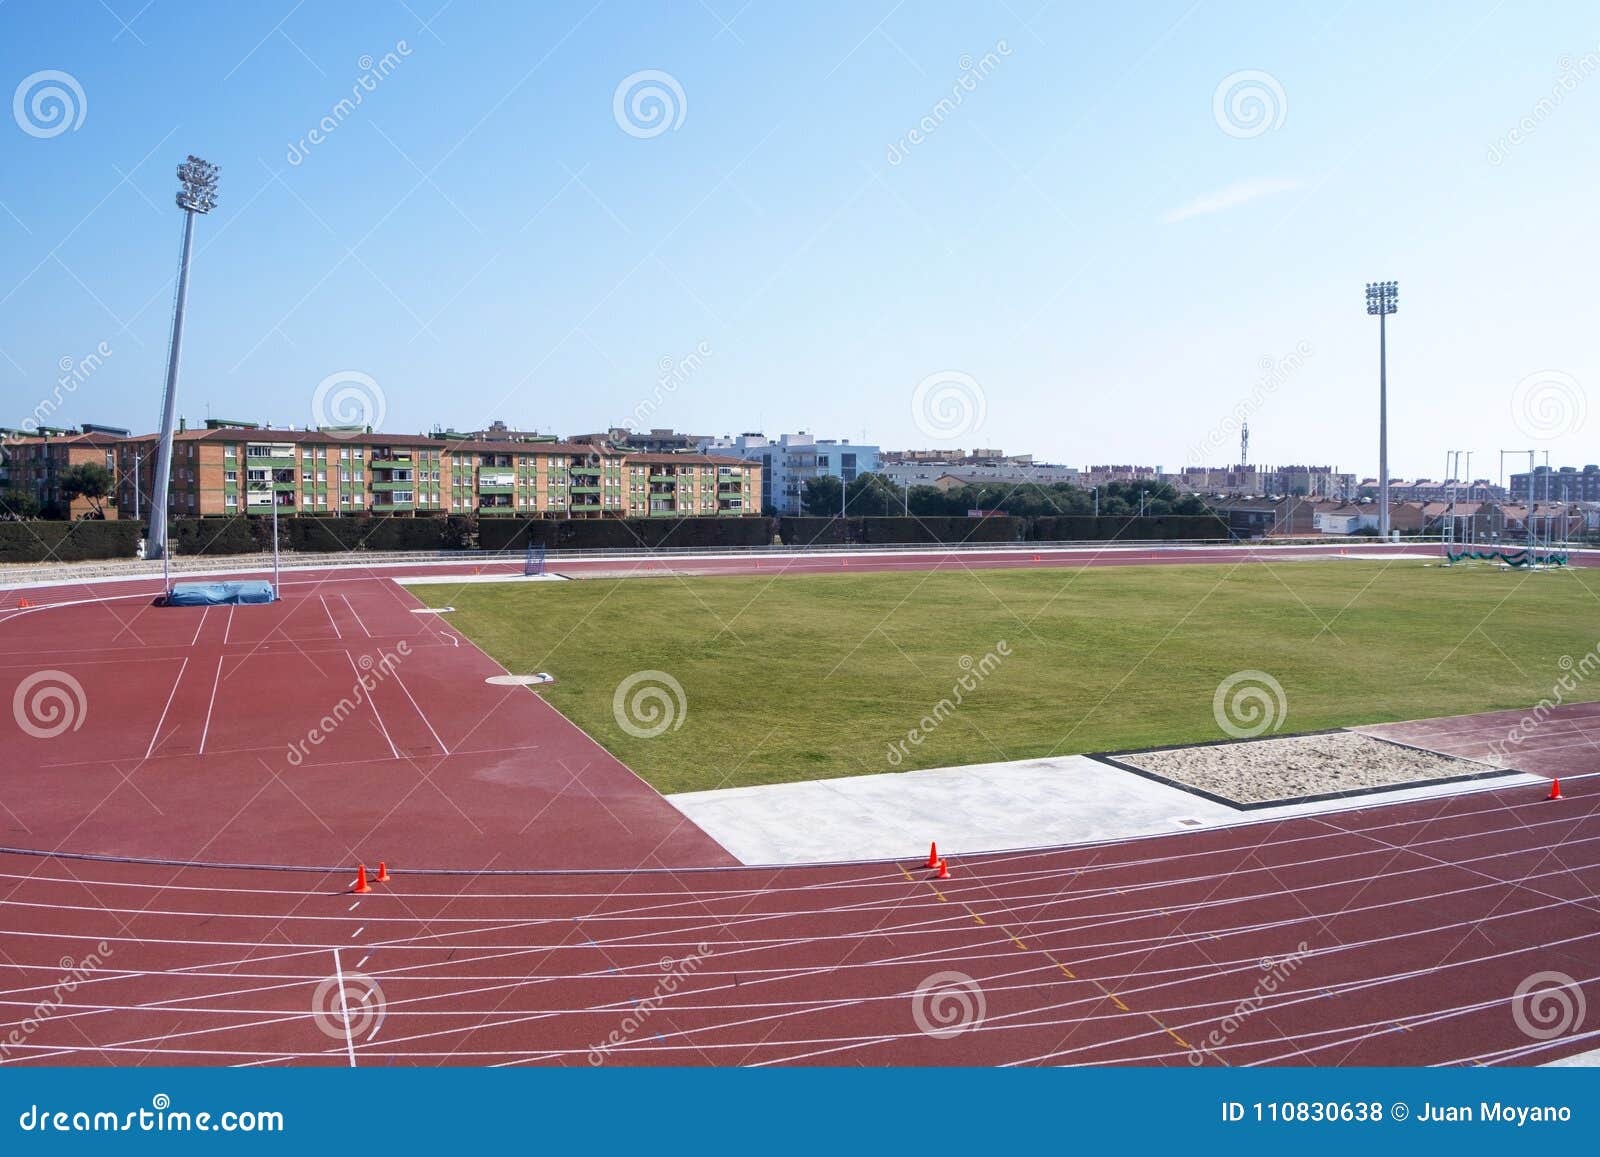 mediterranean games athletics stadium in tarragona